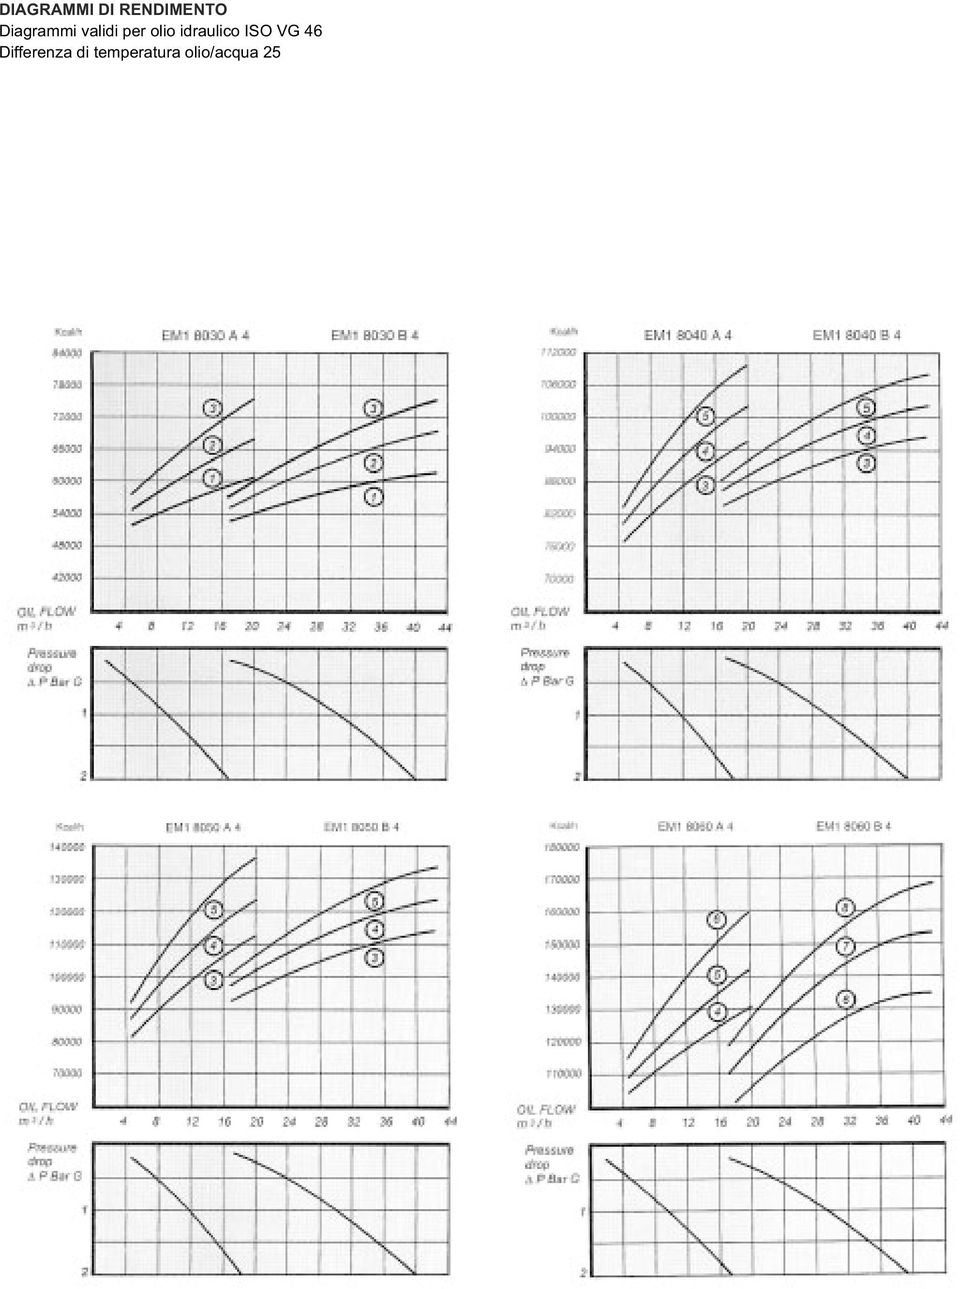 curve occorre moltiplicare le kcal/h che si vogliono dissipare per il coefficiente in tabella.